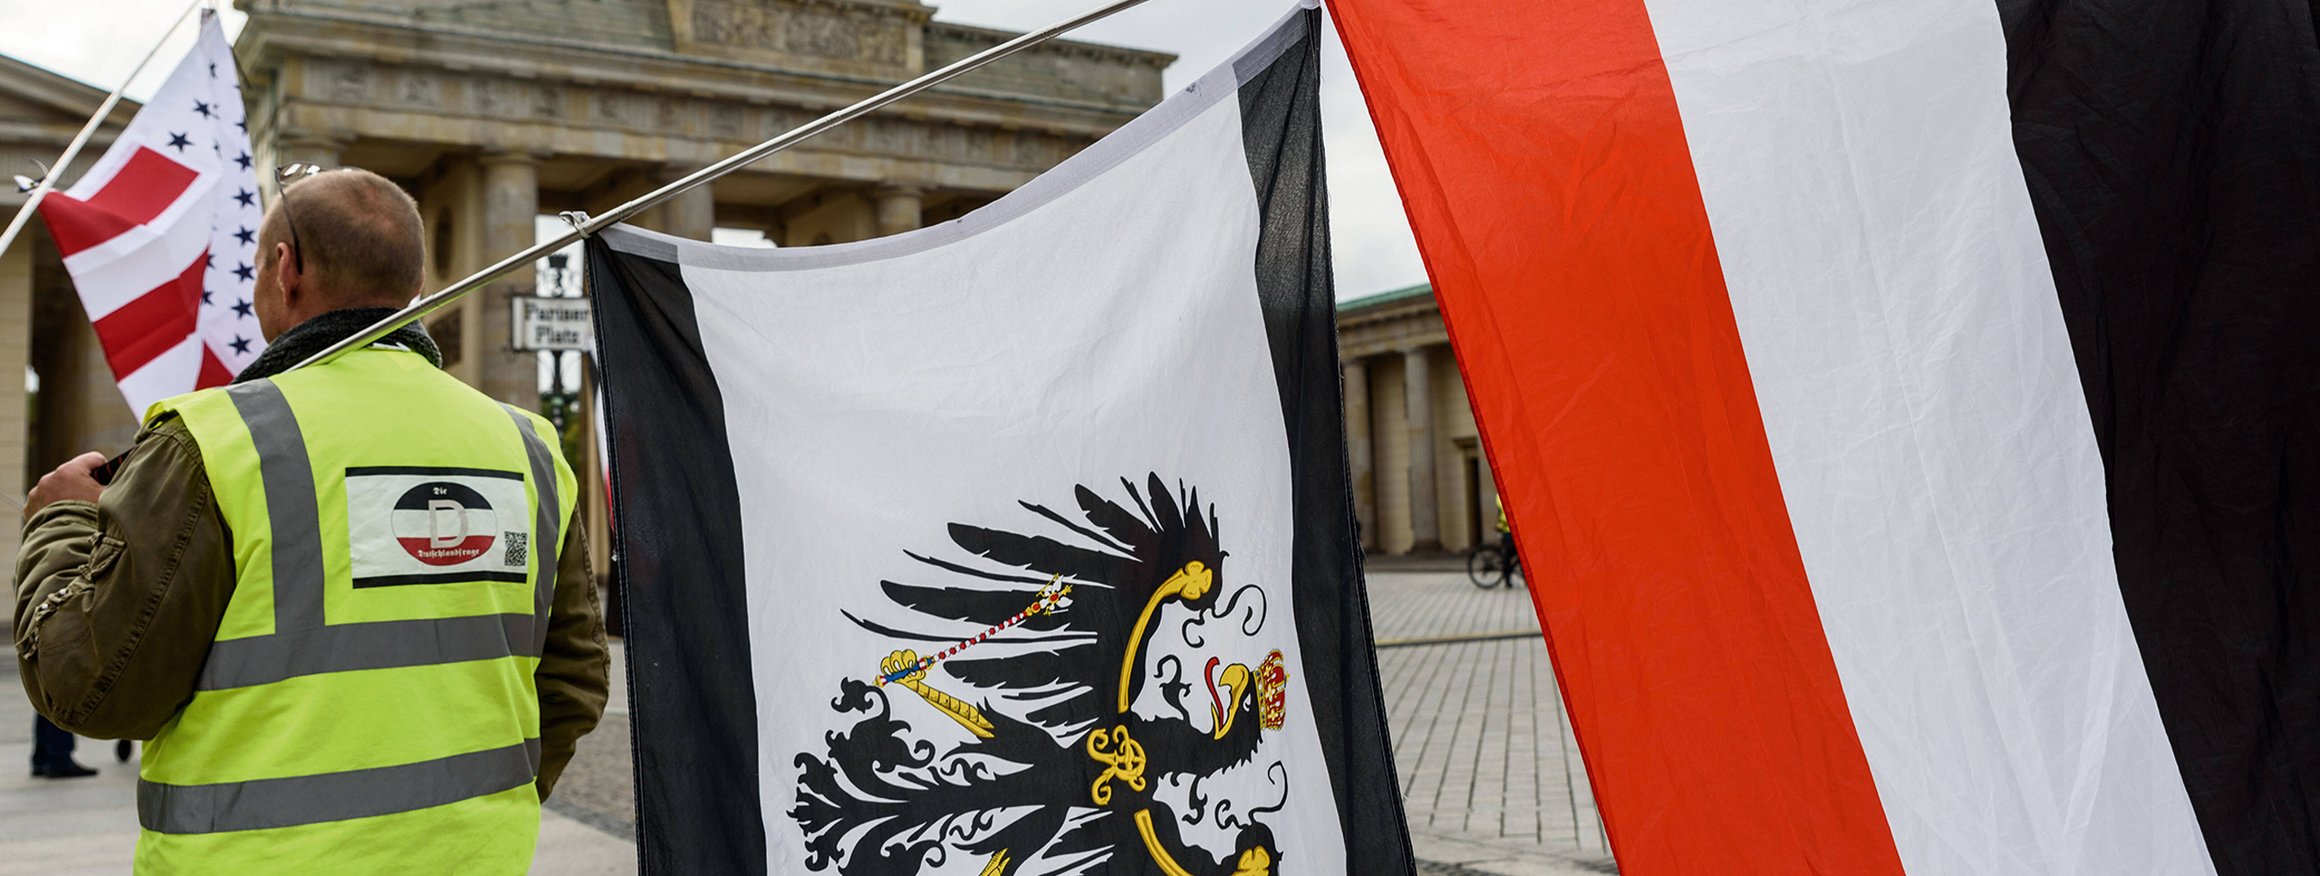 Ein Reichsbürger trägt auf einer Demonstration am Brandenburger Tor eine gelbe Weste mit Deutschland-Symbol und zwei Flaggen